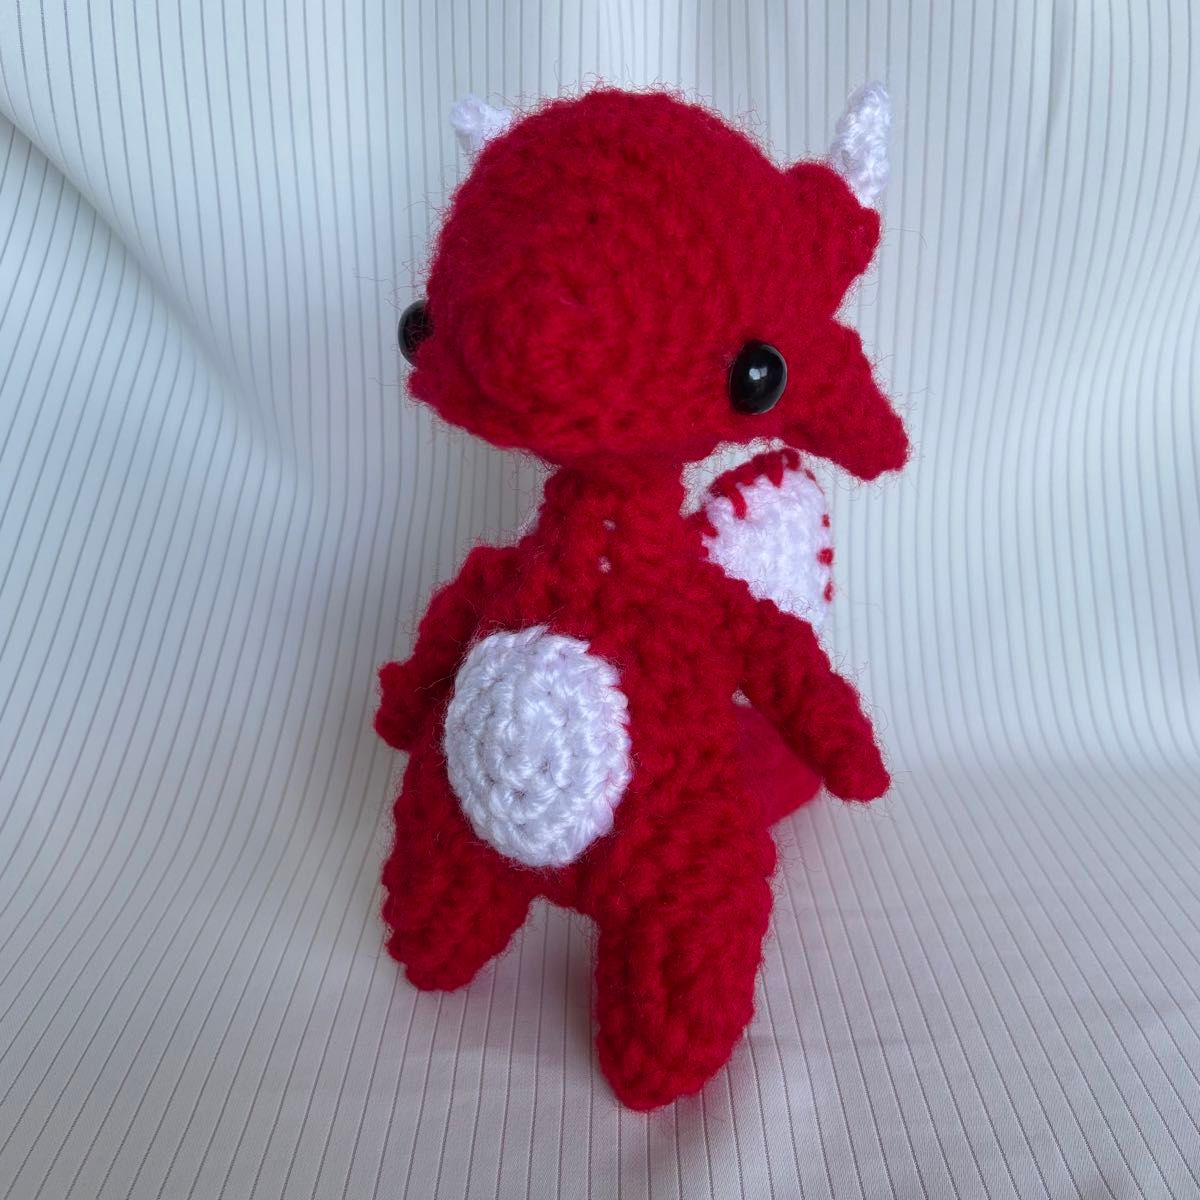 ドラゴン　龍　竜　編みぐるみ　あみぐるみ　ハンドメイド　ぬいぐるみ　赤　赤色　レッド　爬虫類　ハチュウ類　手作り　編み物